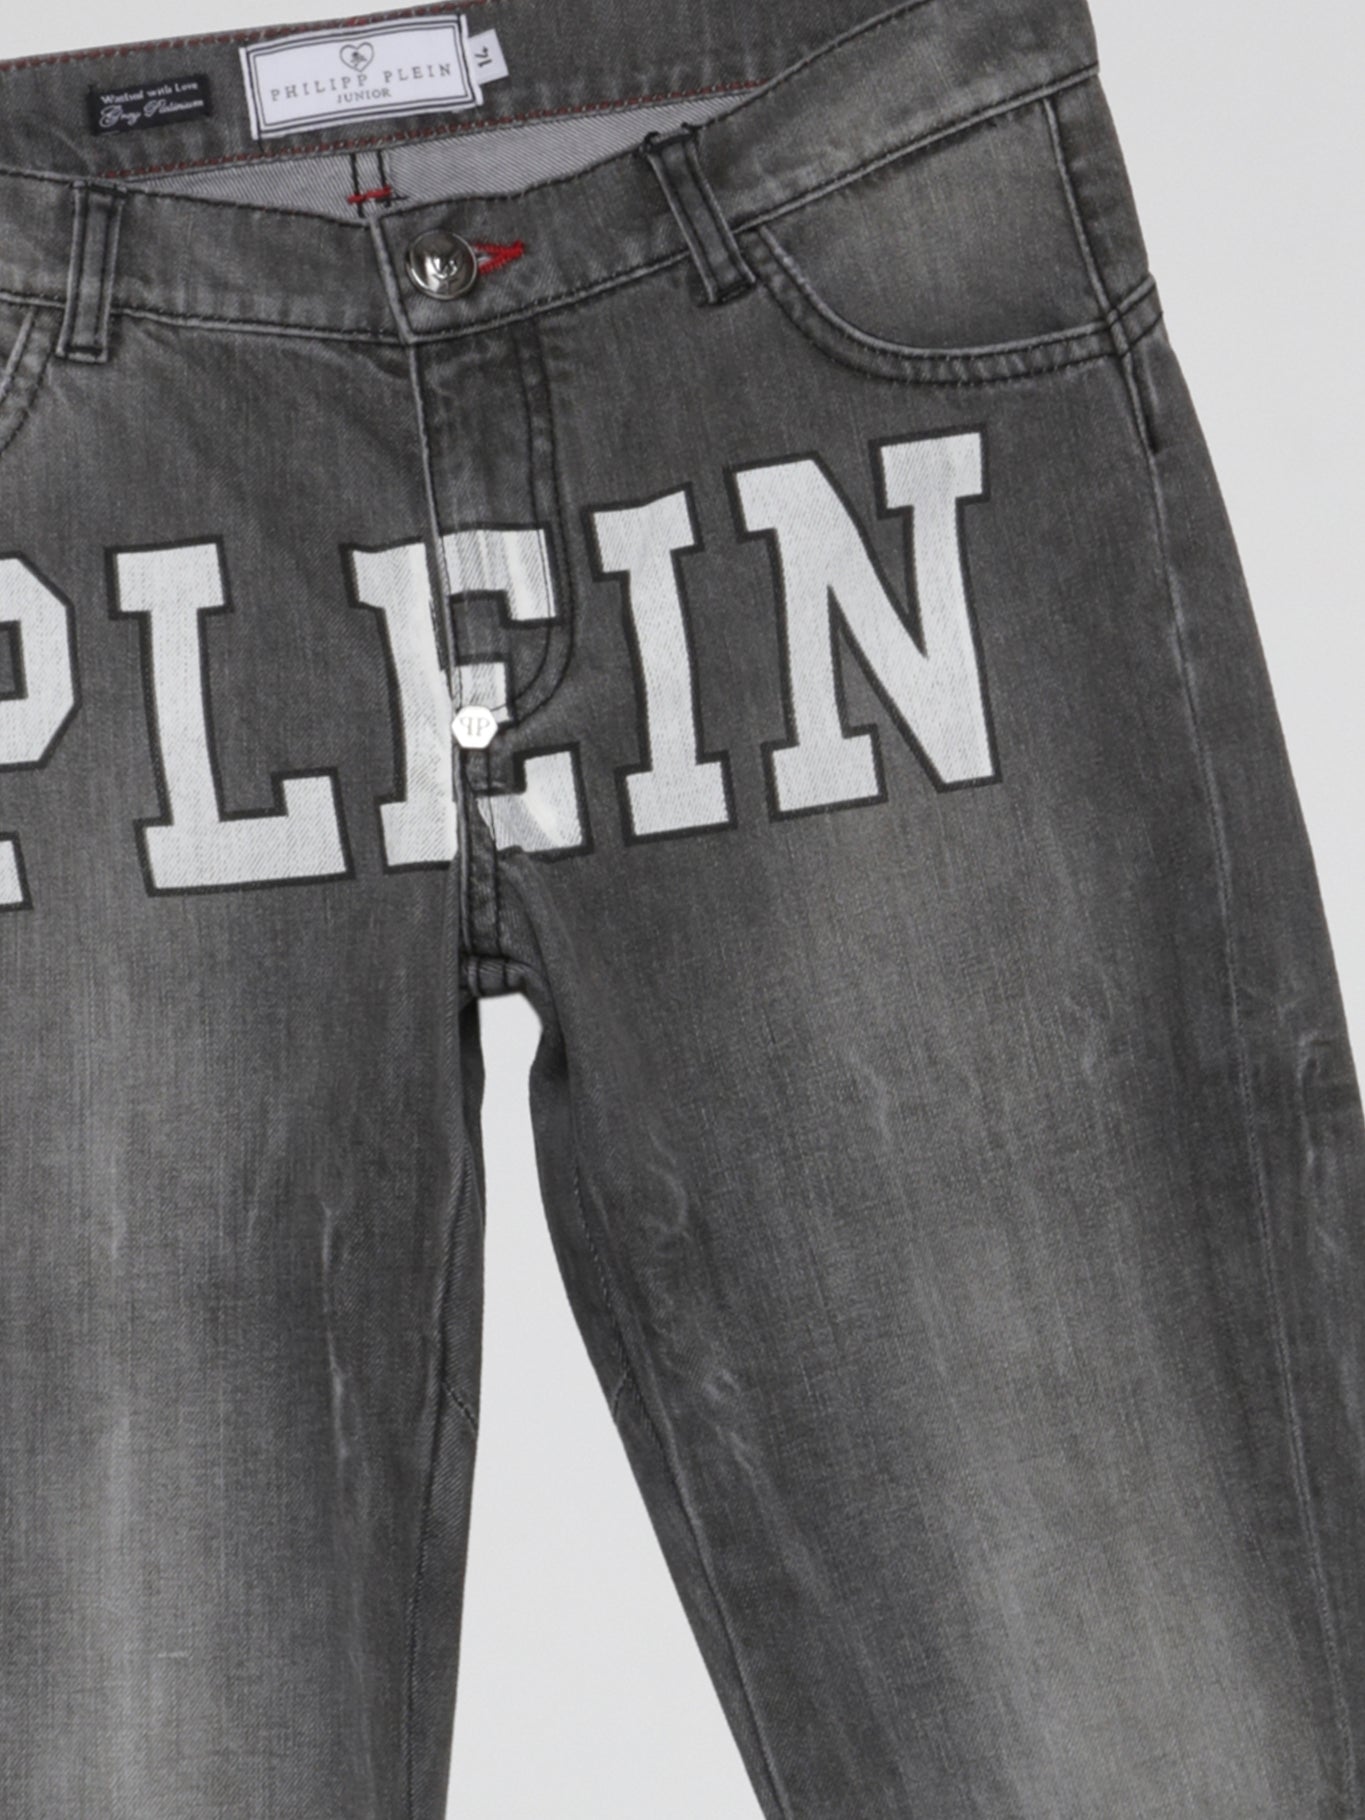 Plein Grey Faded Denim Jeans (Kids)